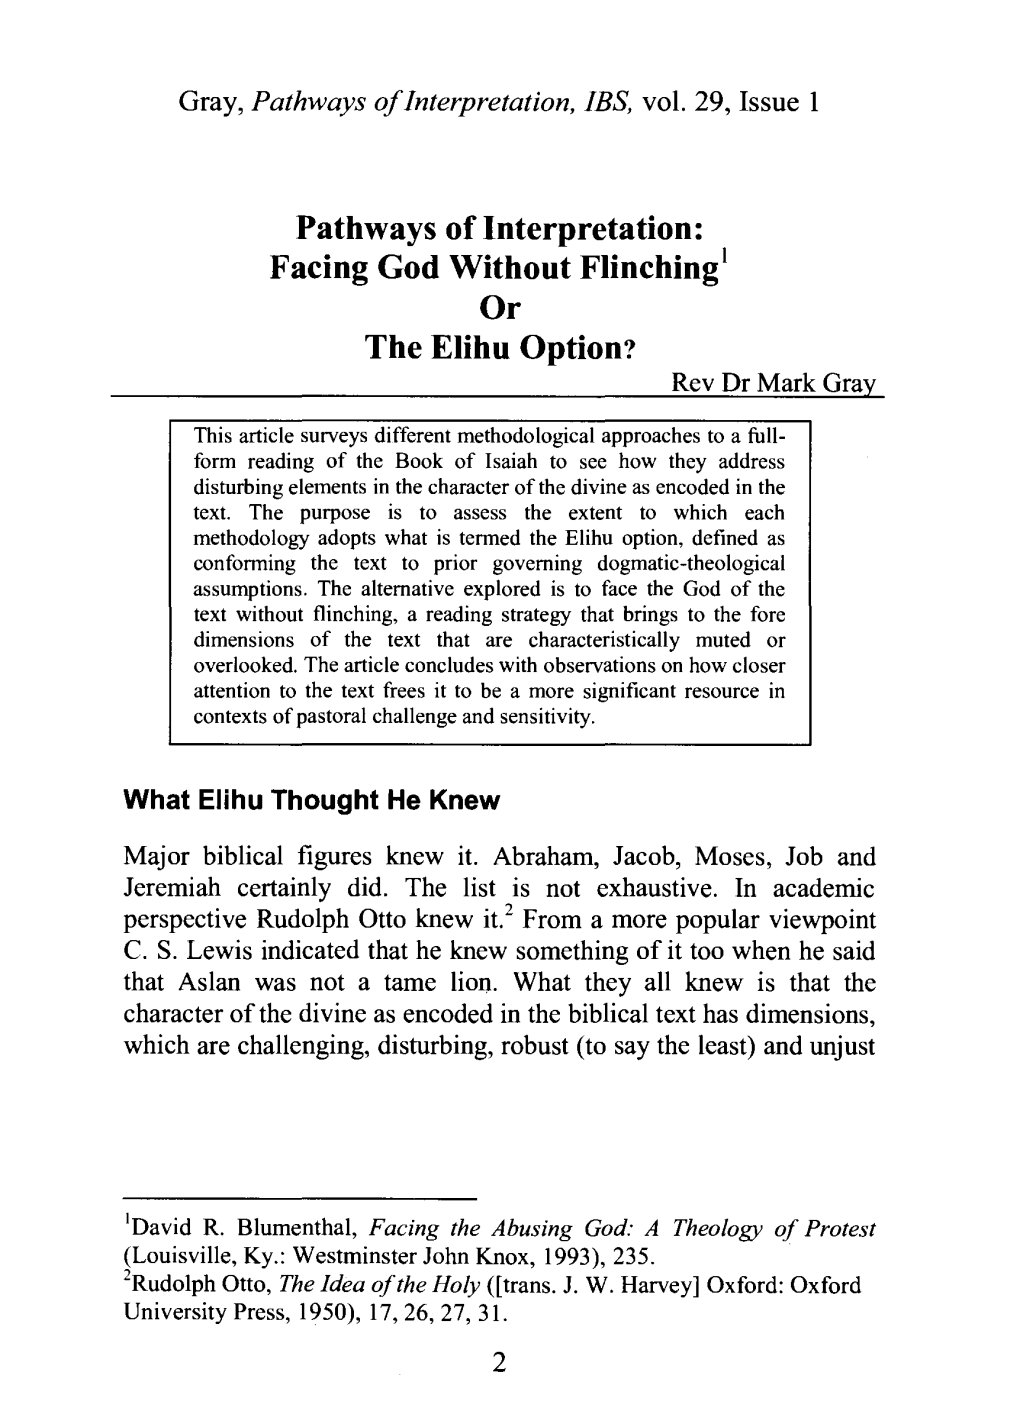 Pathways of Interpretation: Facing God Without Flinching Or the Elihu